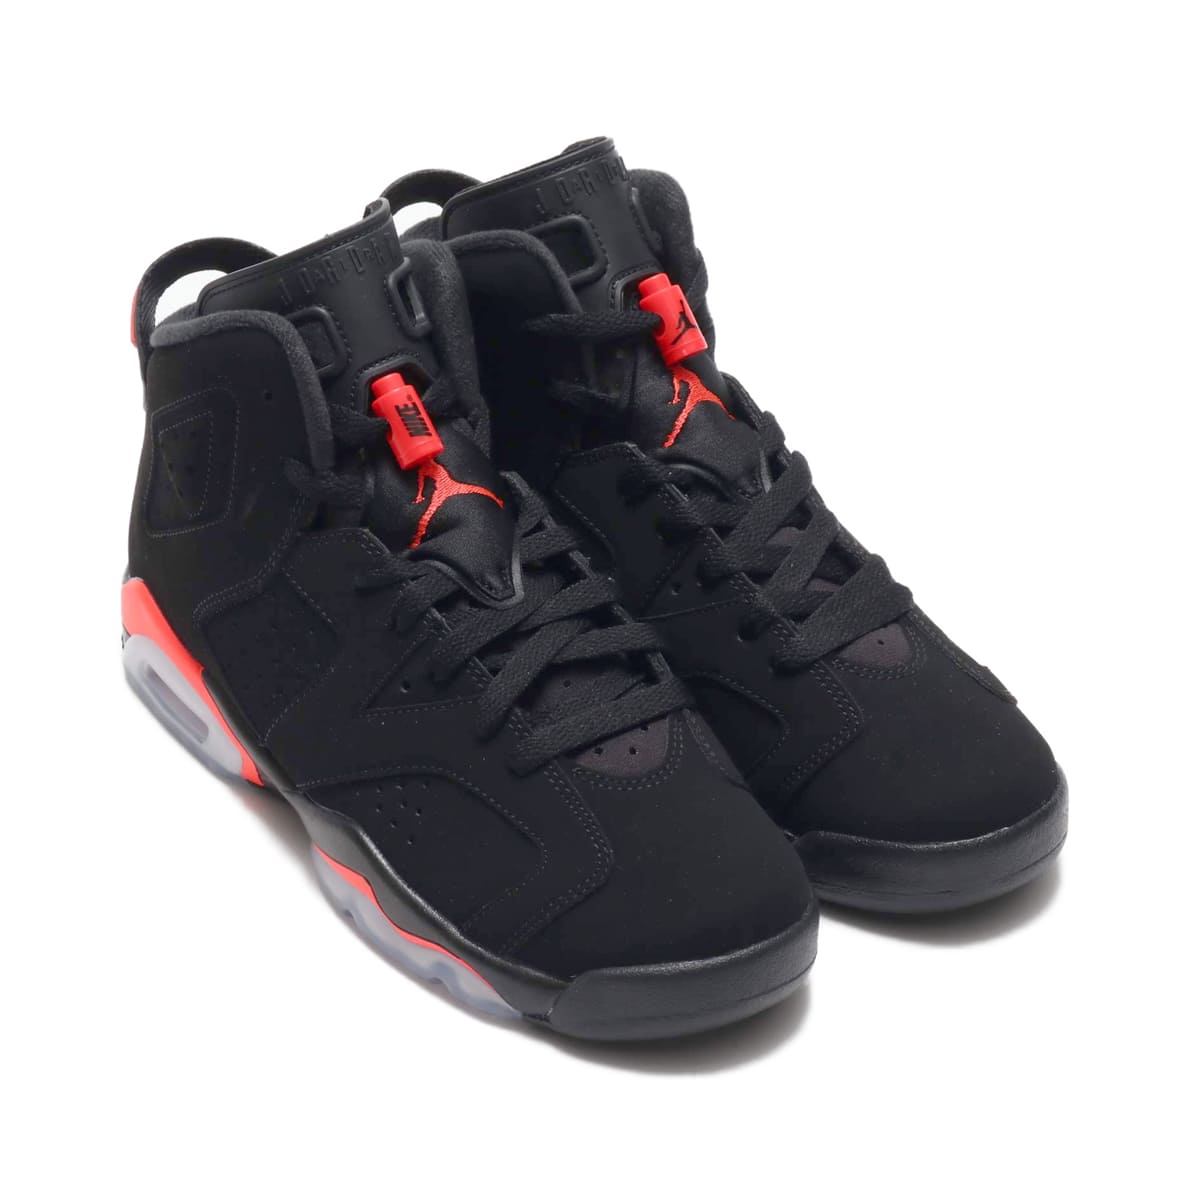 Jordan Brand Air Jordan 6 Retro (GS) Black/Infrared 